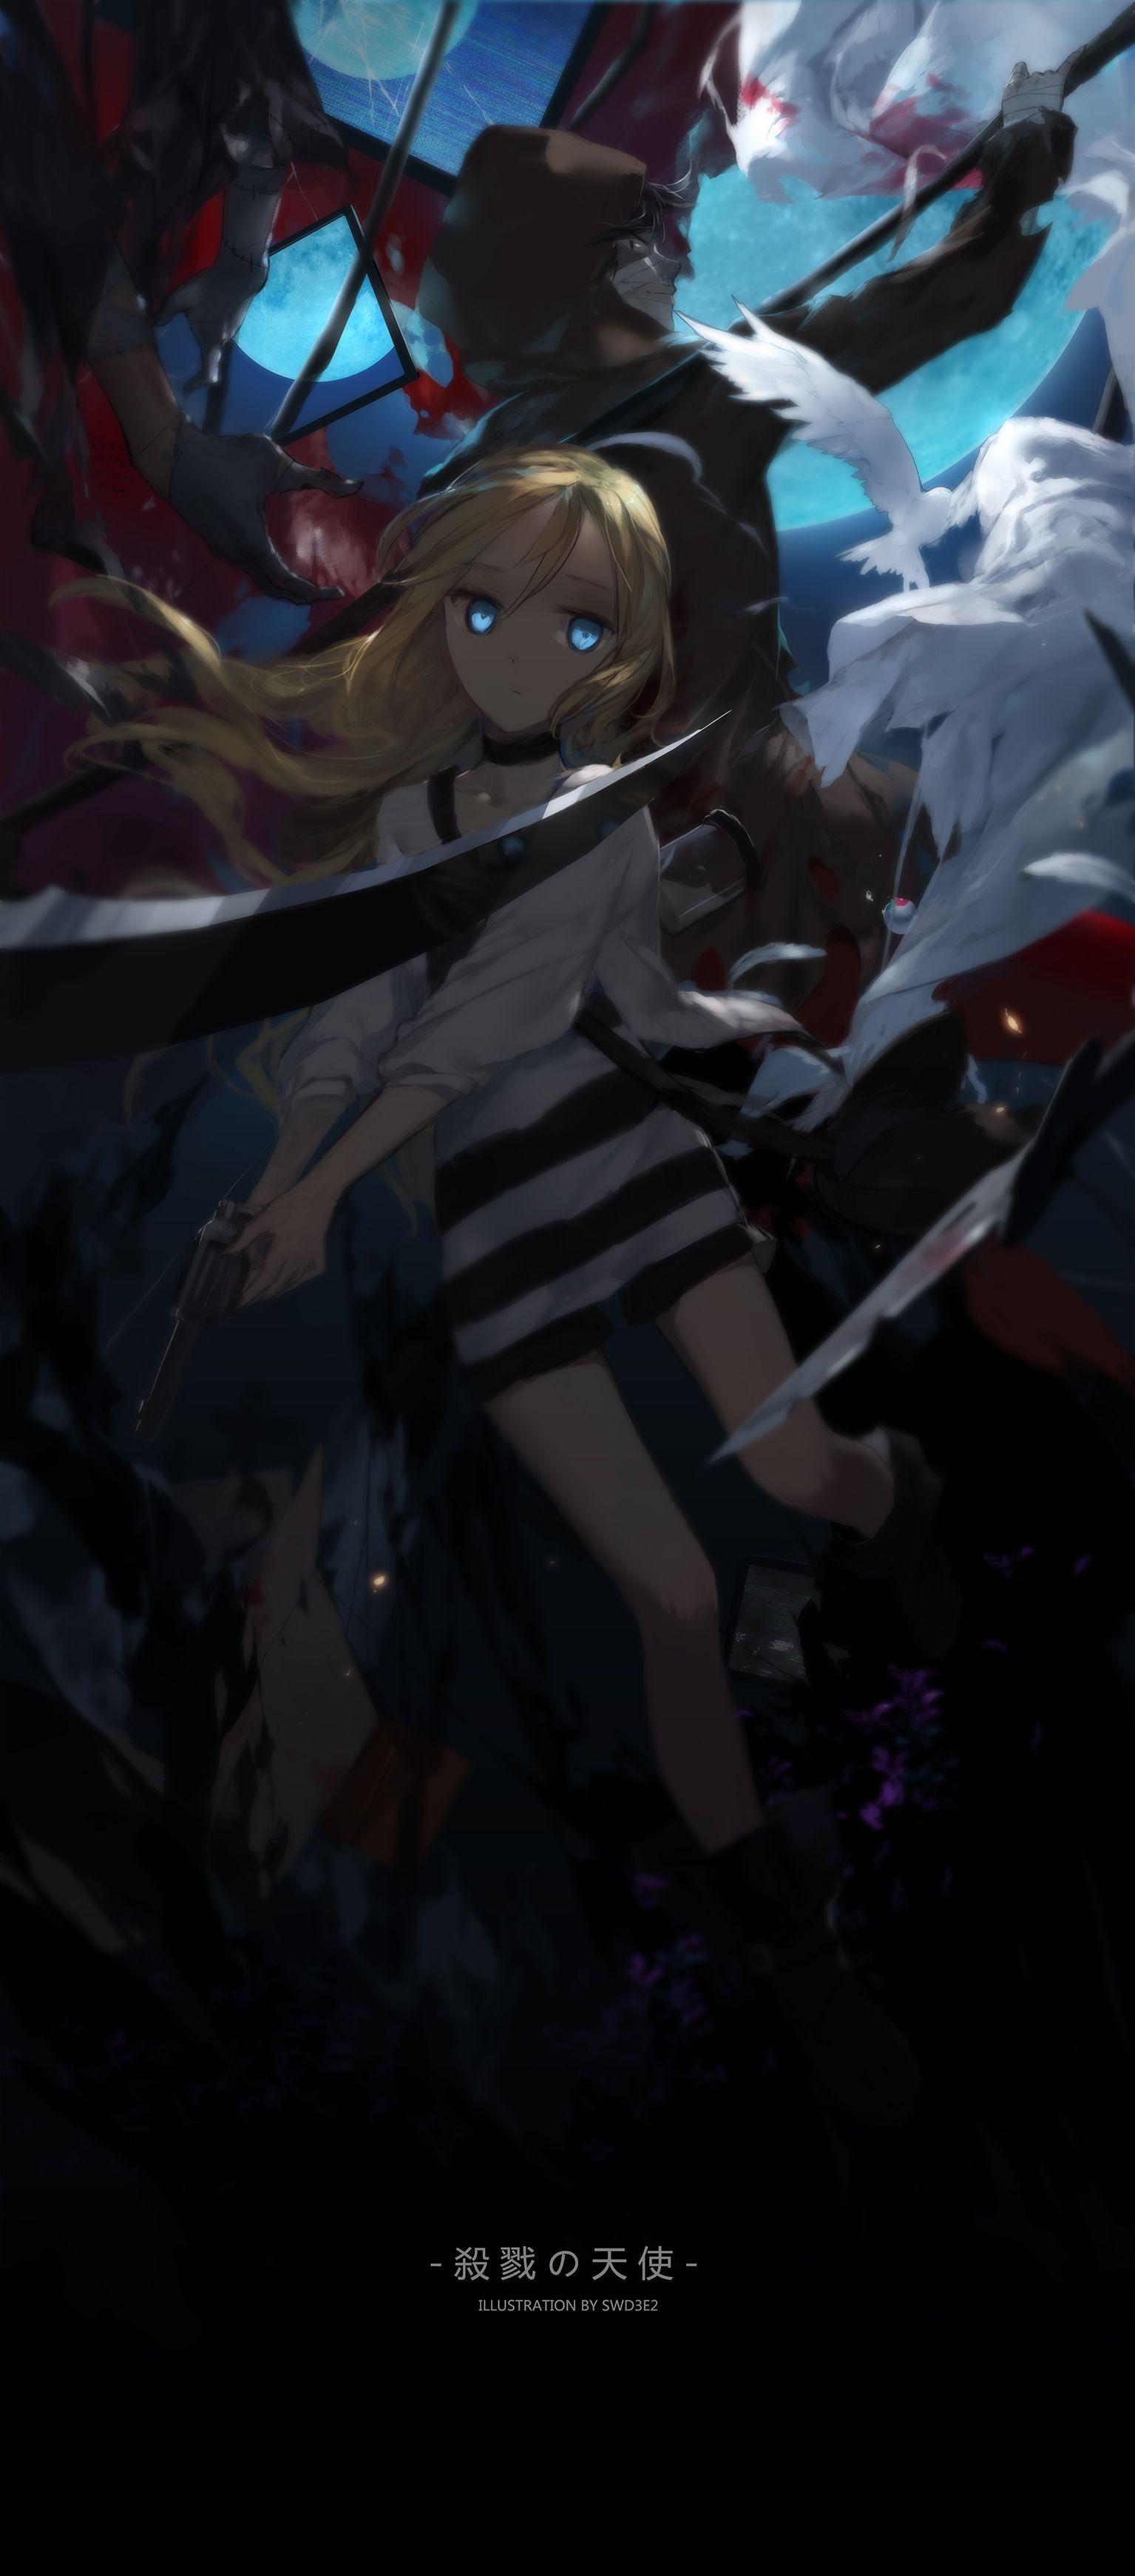 1535x3485 Satsuriku no Tenshi (Thiên thần của cái chết) - Hình ảnh anime Zerochan